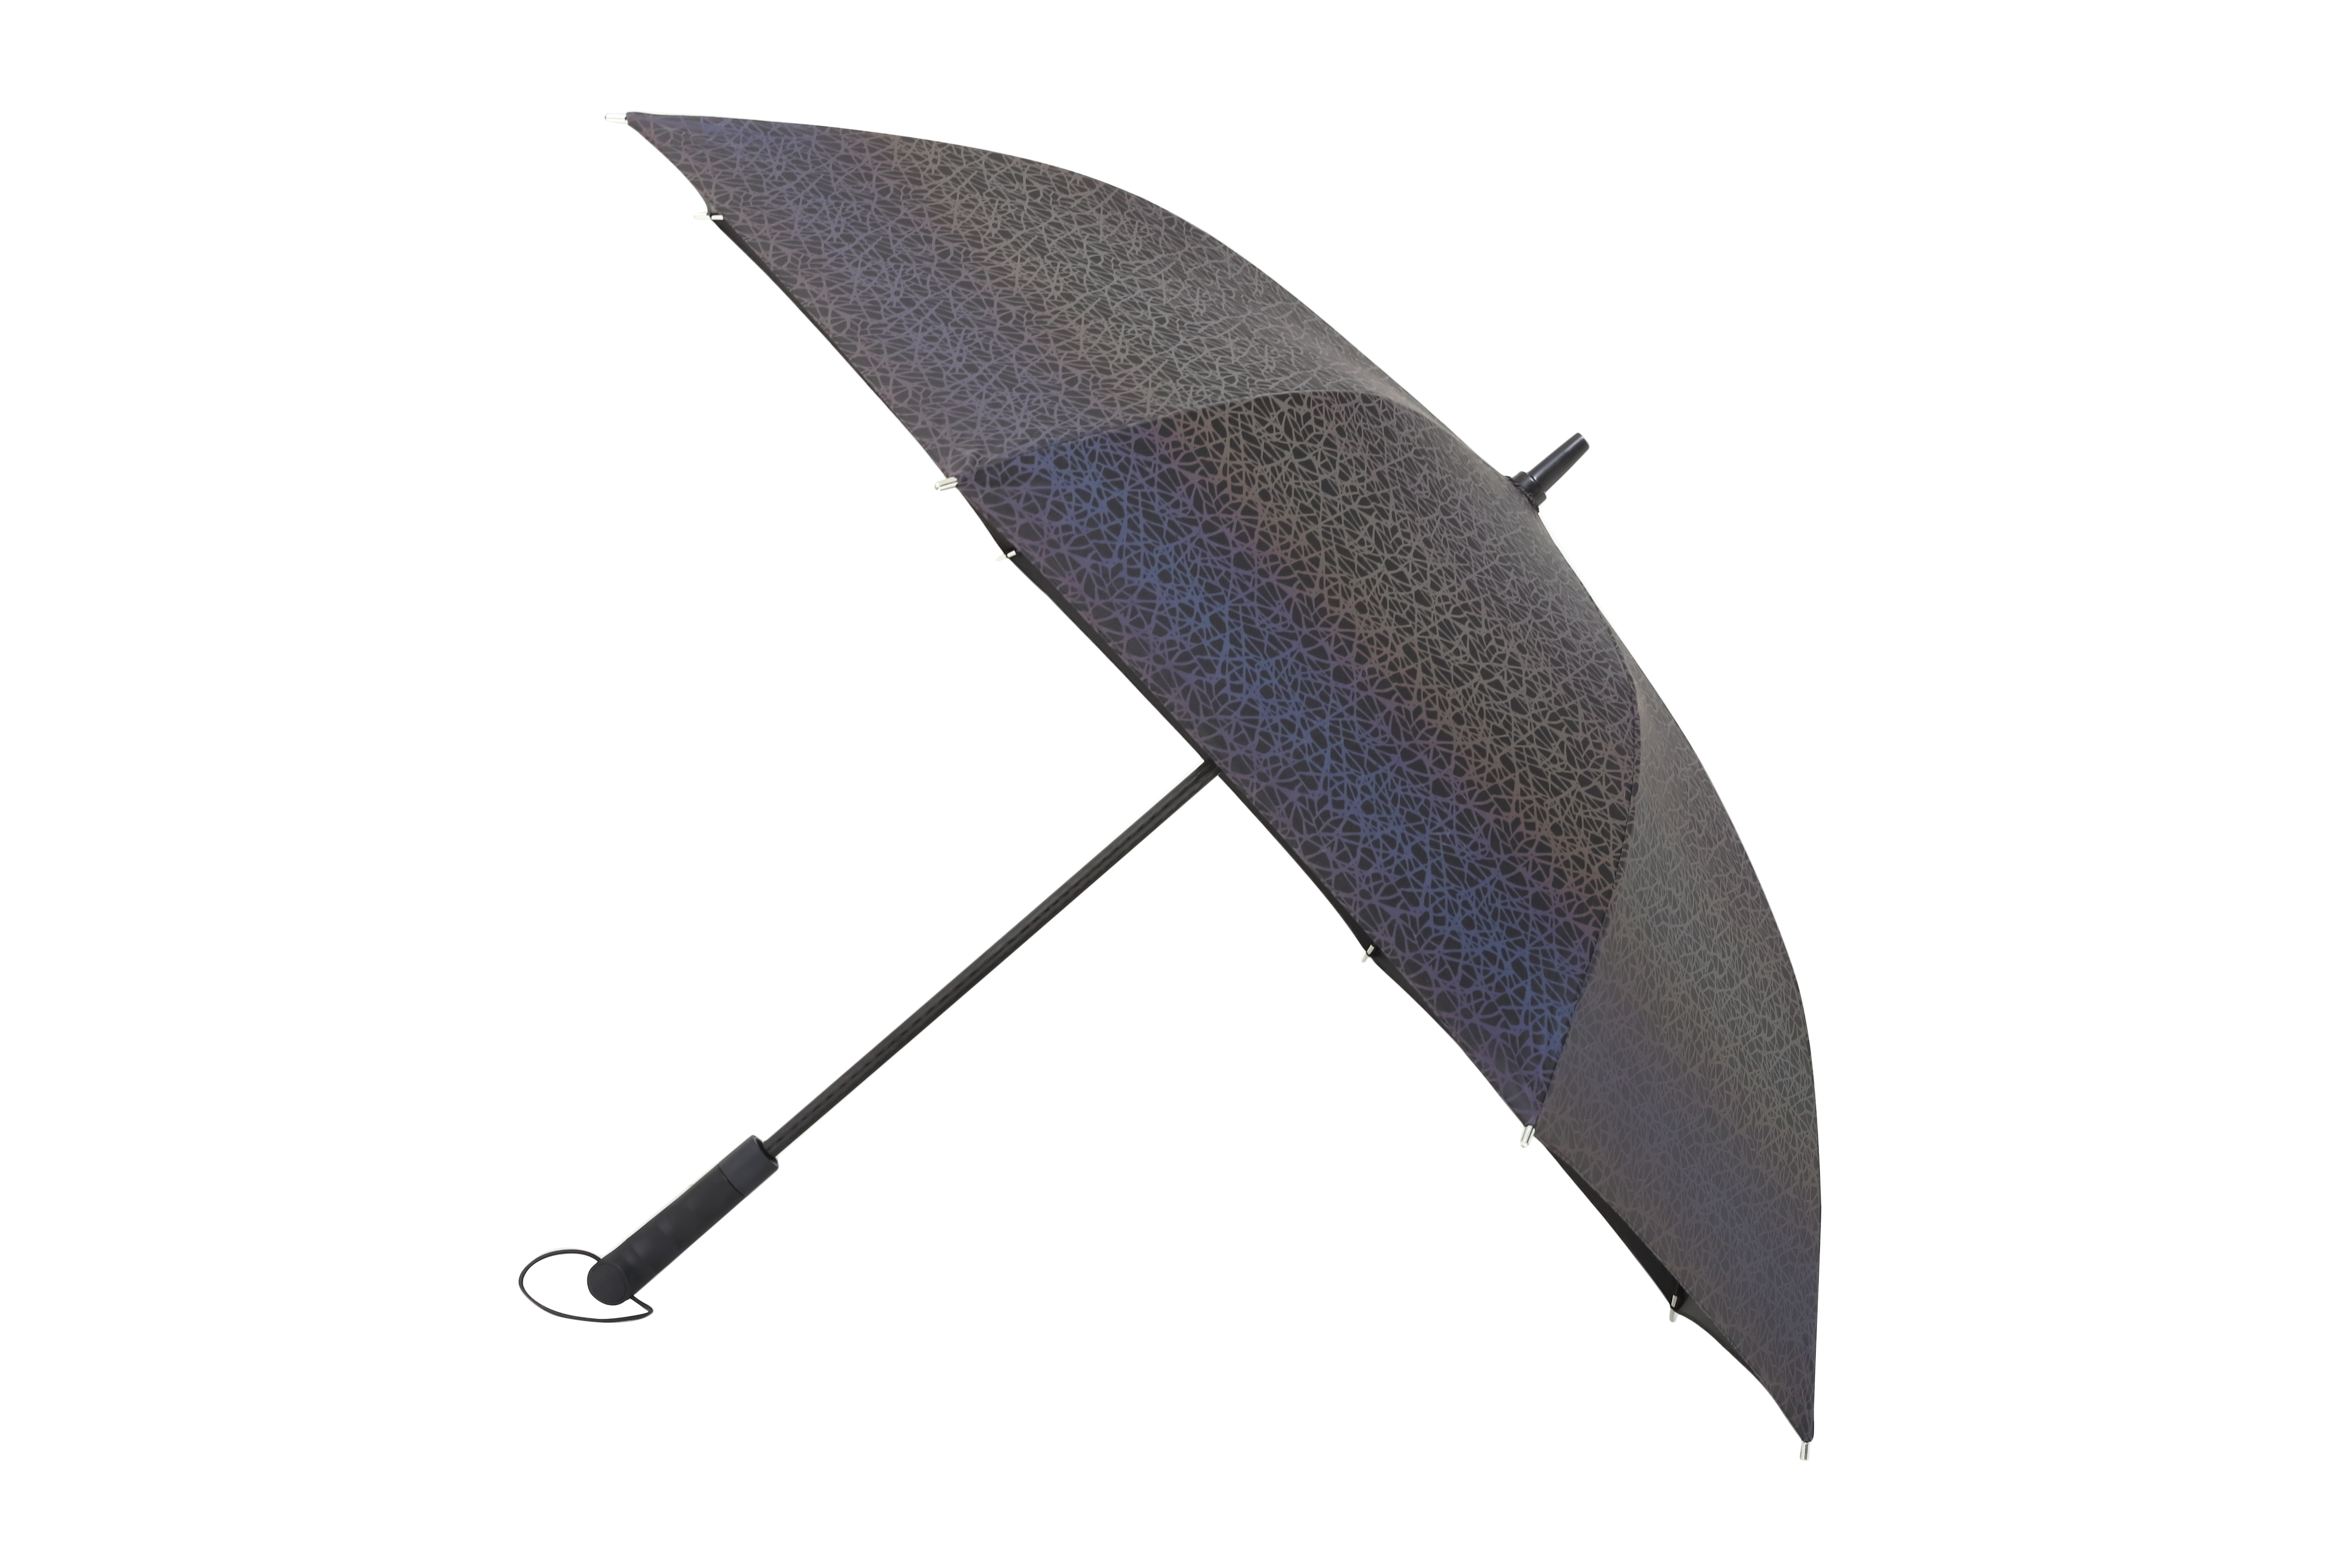 Ovida ရောင်စုံအကန့် စိတ်ကူးယဉ် တီထွင်မှုအသစ်ကို ကြည့်ရှုသည့်အခါတိုင်း အရောင်ပြောင်းနေသည့် ထီးကို အသက်သွင်းပါ။